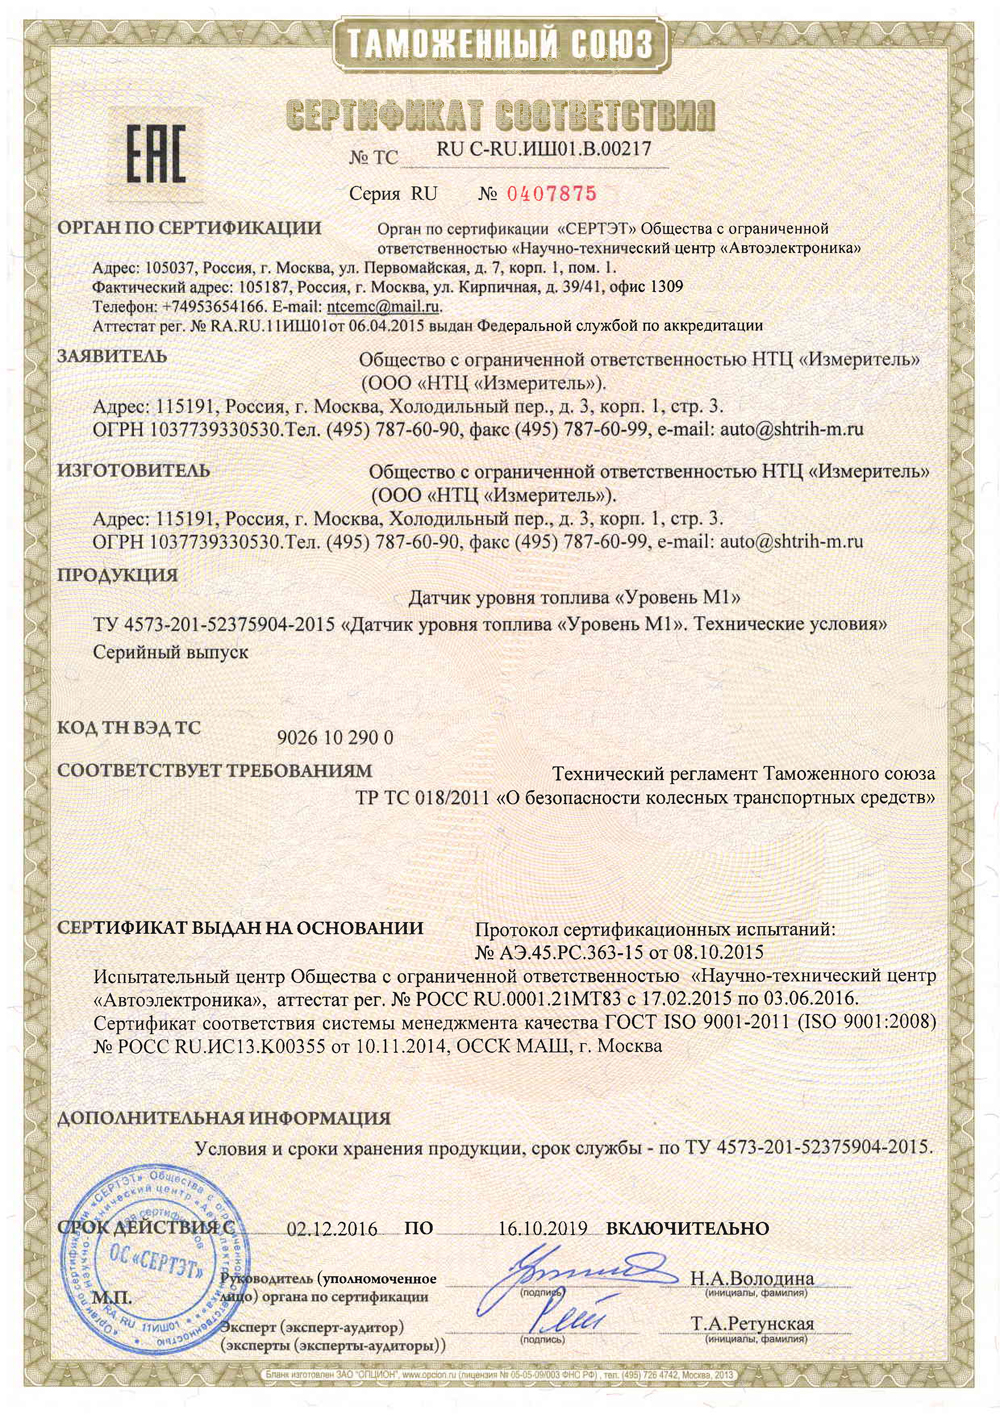 Сертификат соответствия техническому регламенту Таможенного Союза ТР ТС 018/2011